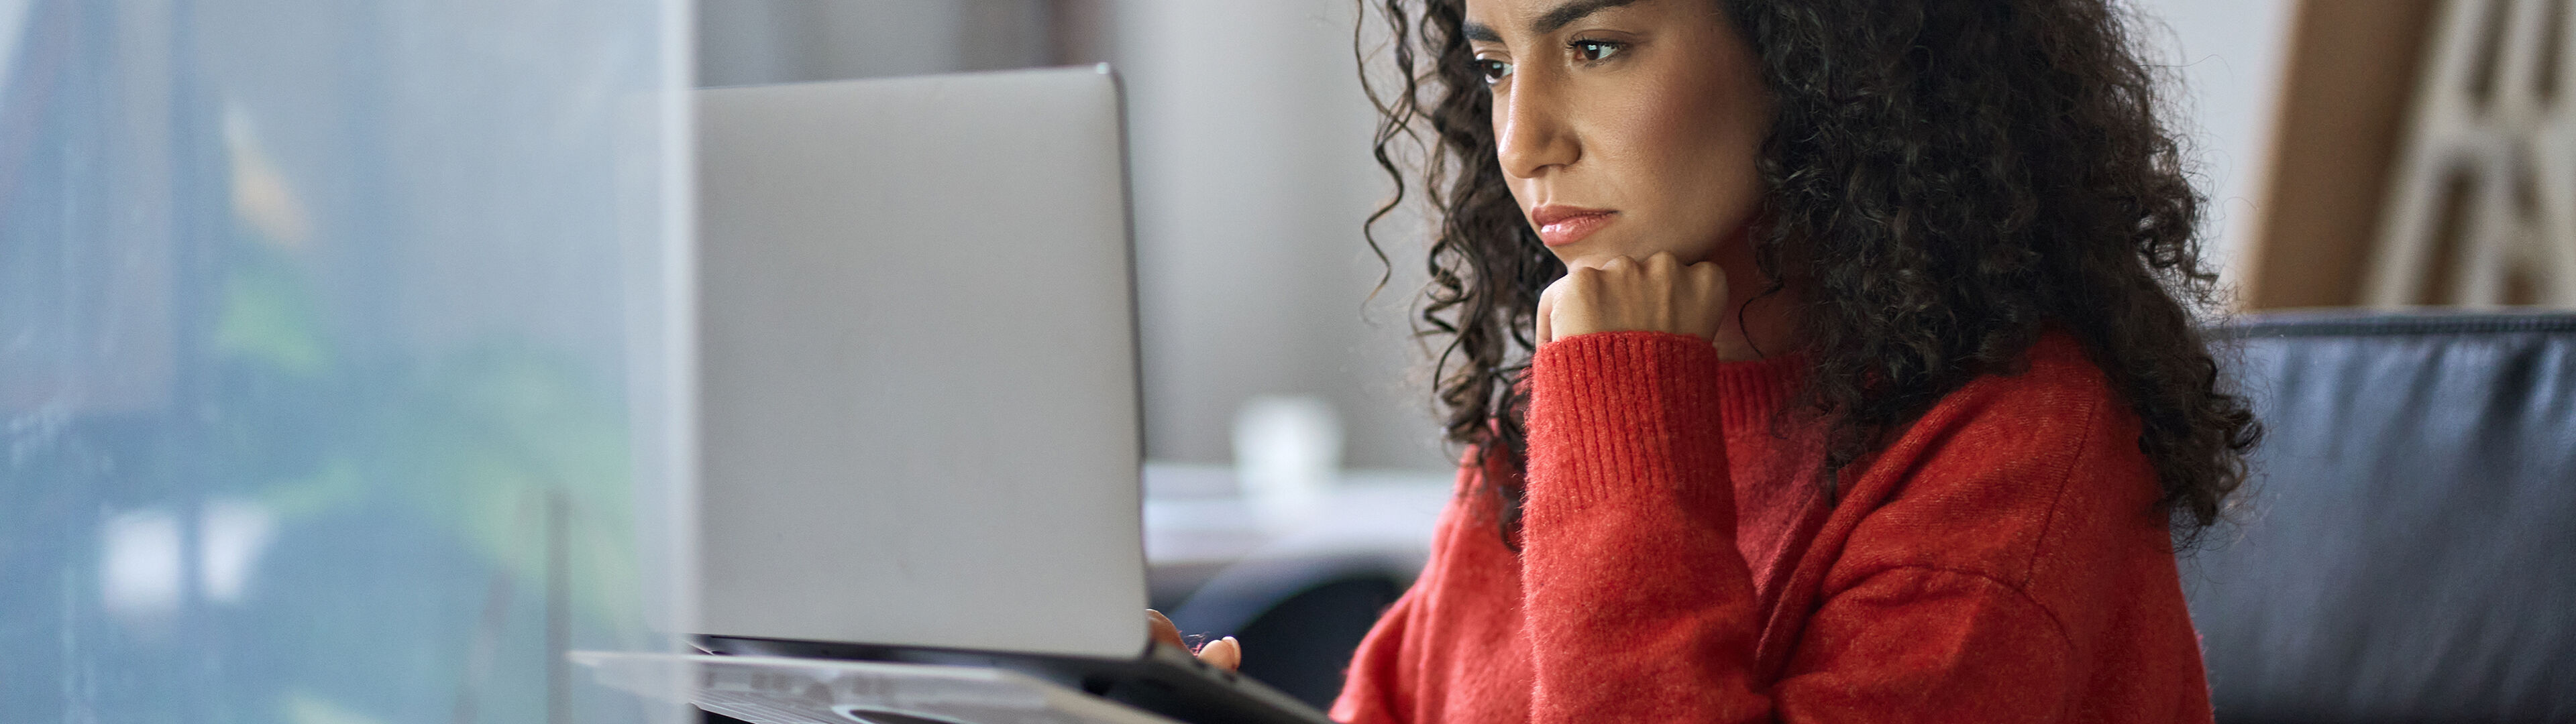 Une femme pensive en pull rouge concentrée sur son travail devant un ordinateur dans un bureau.